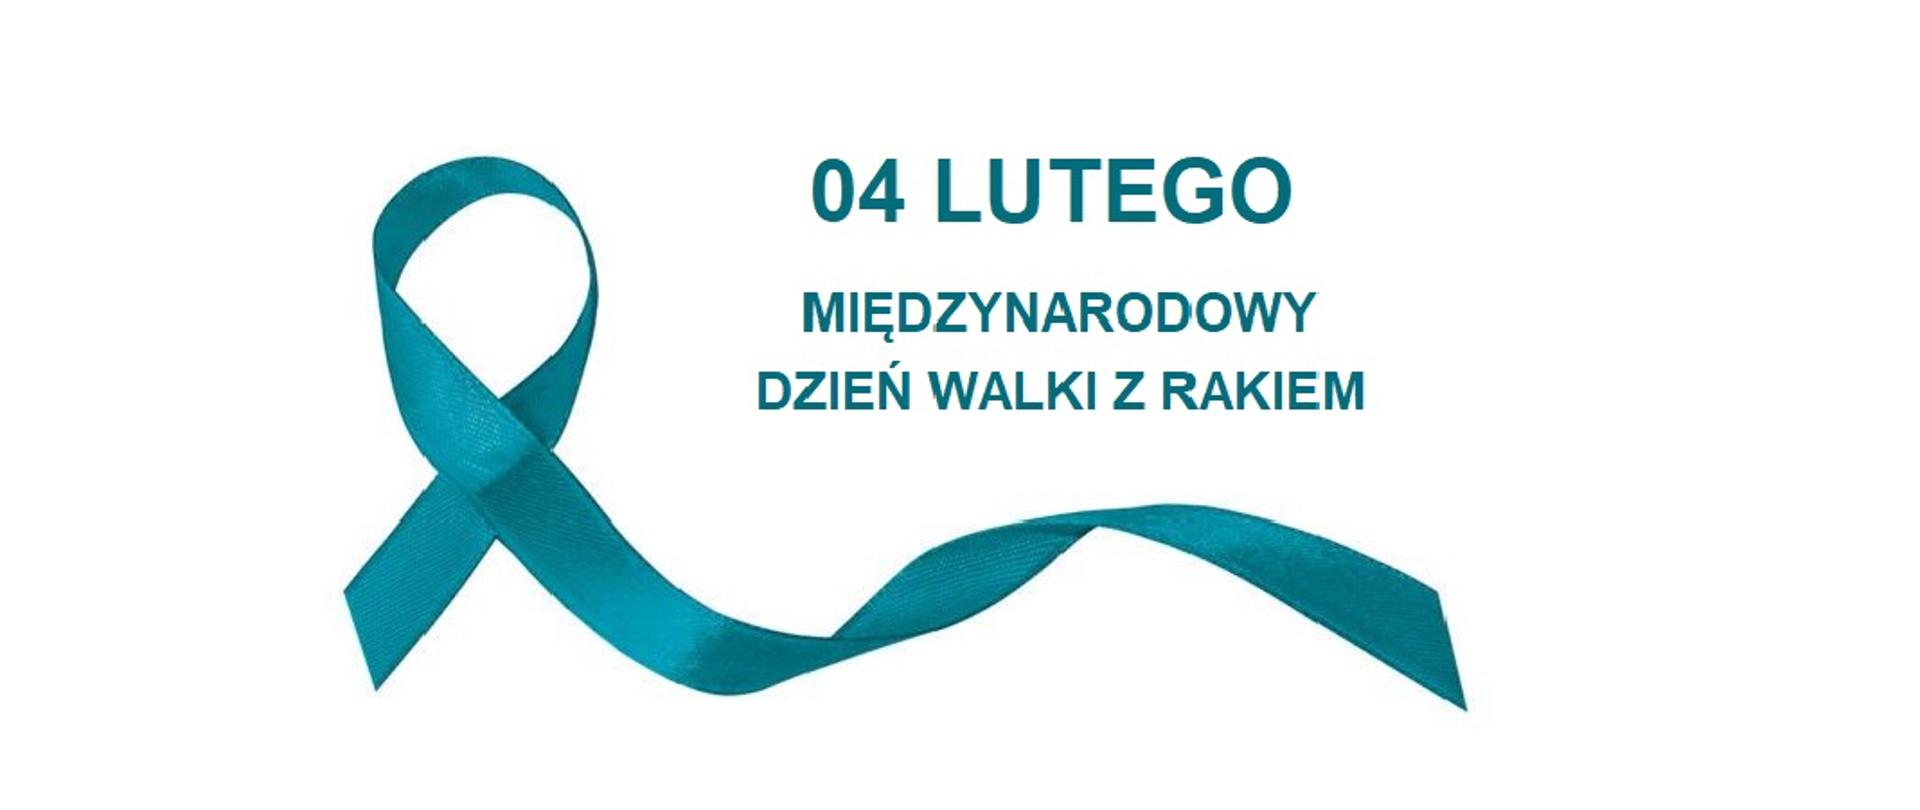 Grafika przedstawia napis w kolorze turkusowym 04 LUTEGO MIĘDZYNARODOWY DZIEŃ WALKI Z RAKIEM oraz wstążkę w tym samym kolorze, która jest symbolem walki z rakiem